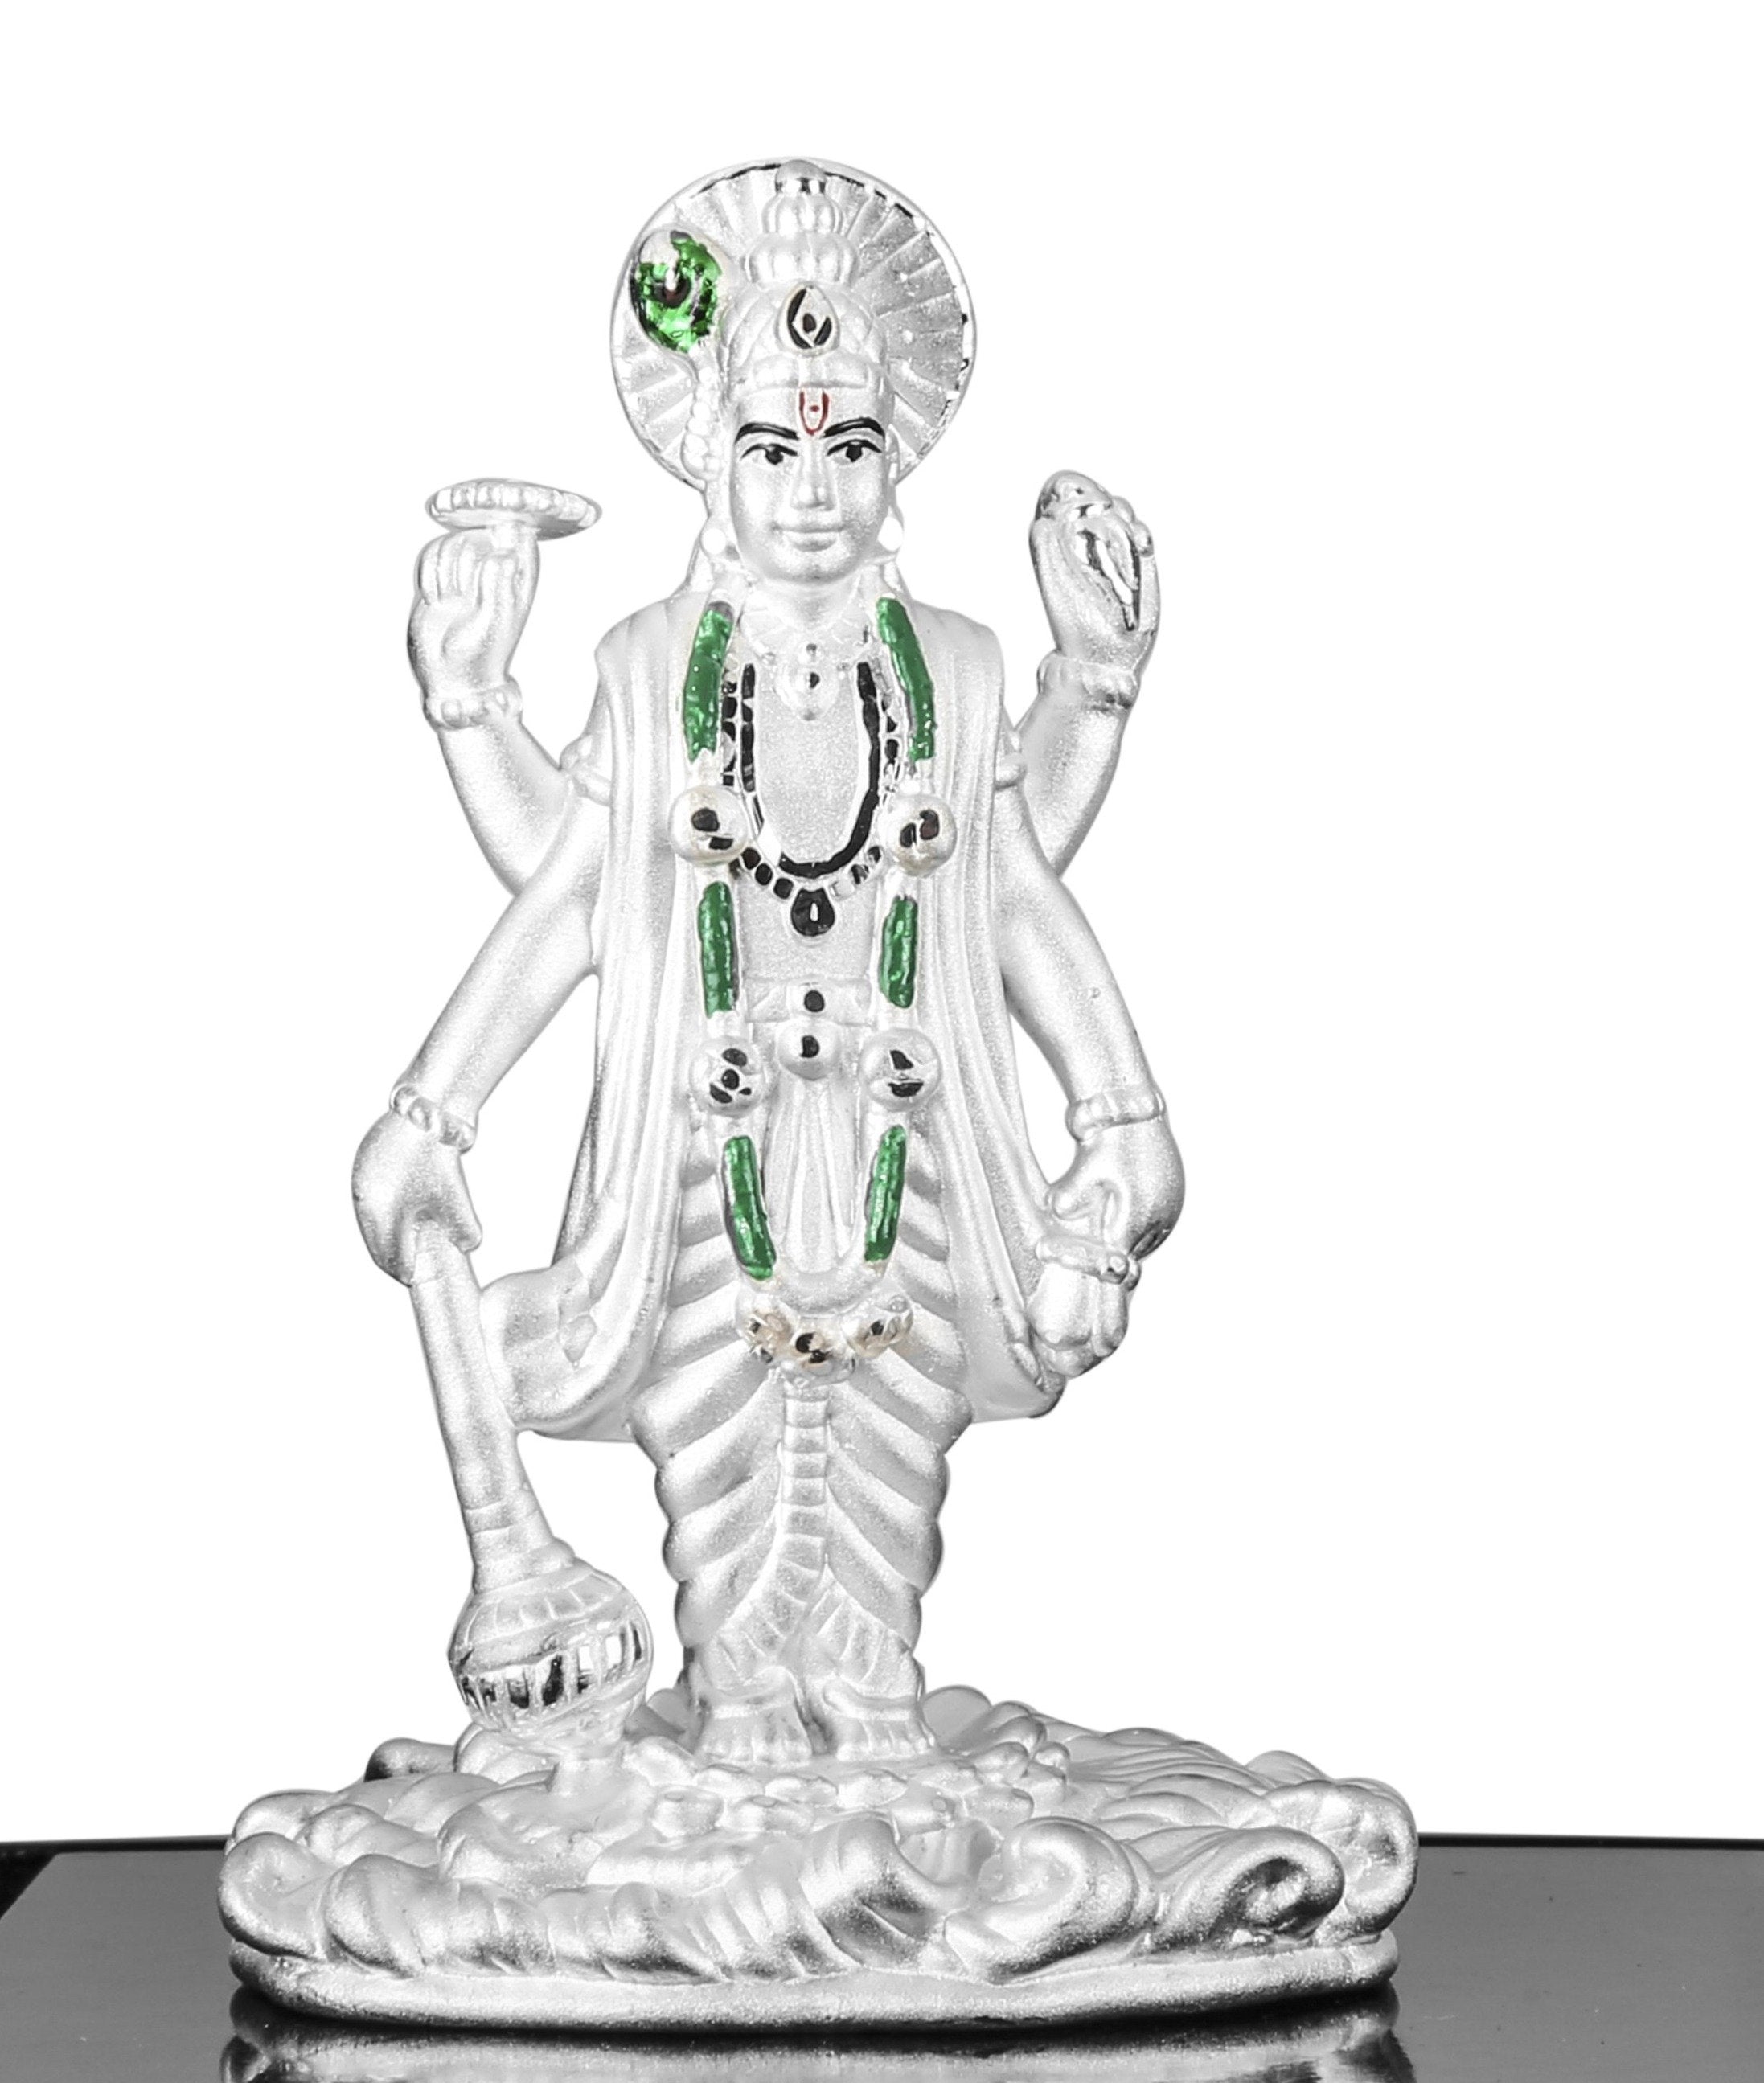 999 Pure Silver Lord Vishnu Idol By Krysaliis Isvara Idols